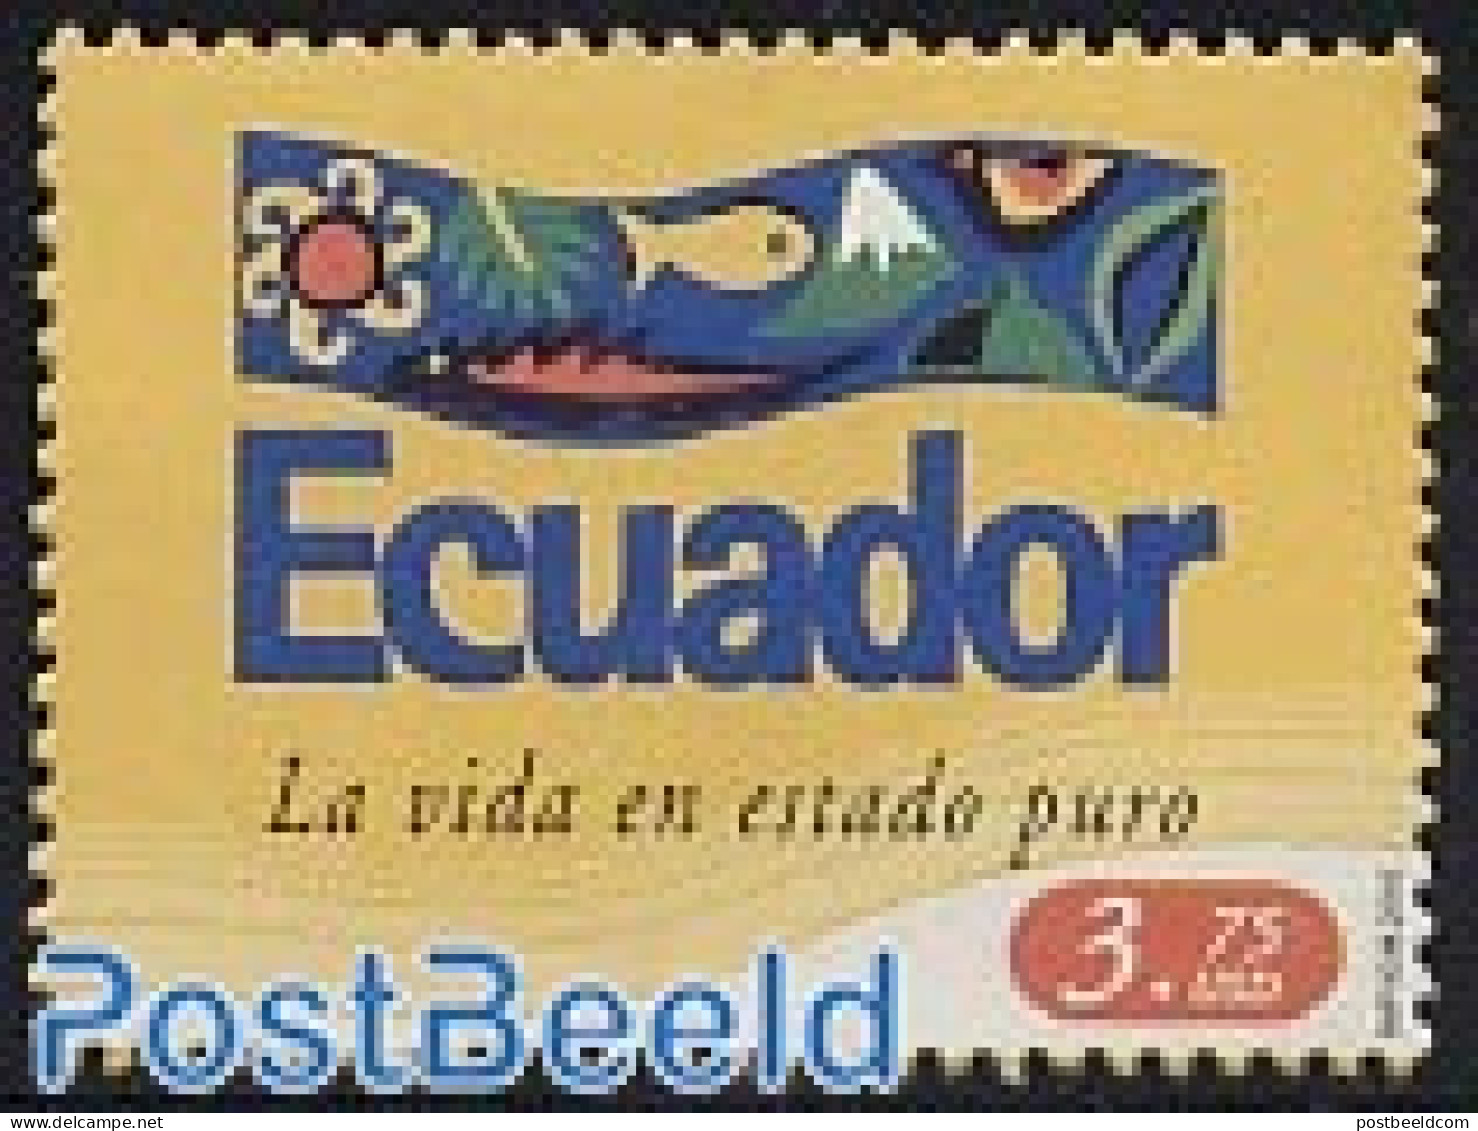 Ecuador 2005 Pure Life 1v, Mint NH, Nature - Birds - Fish - Peces